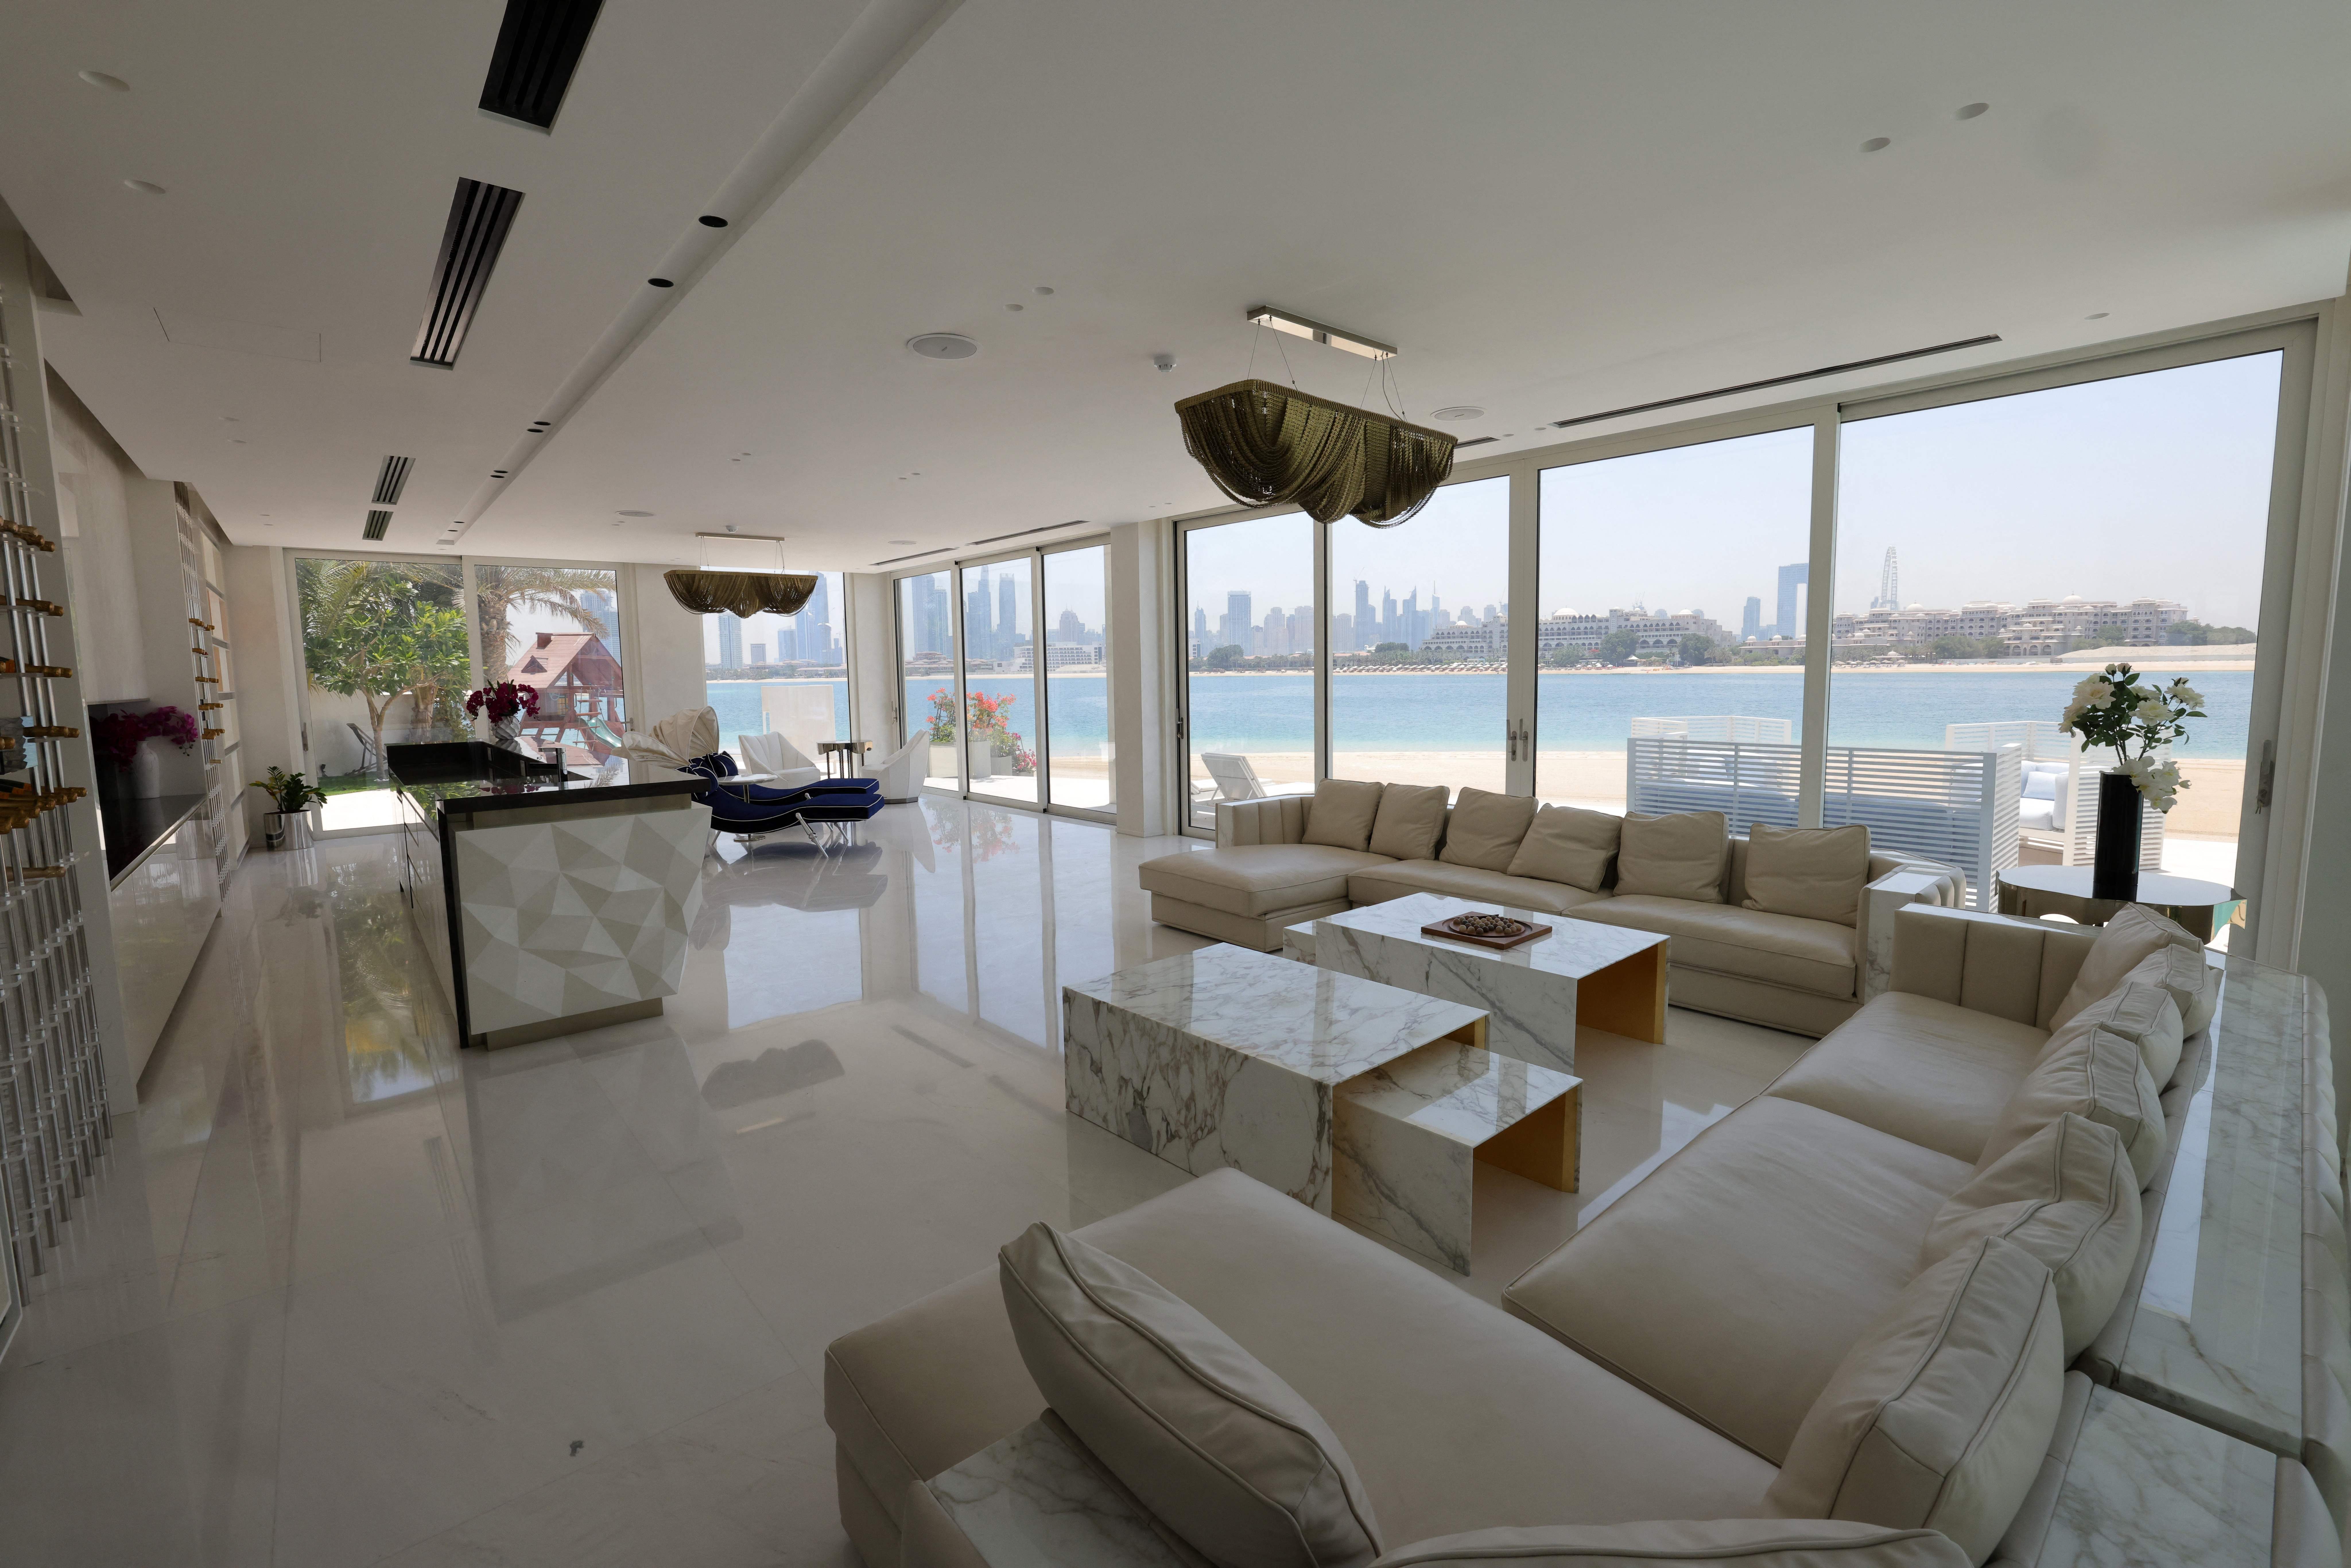 Cristiano Ronaldo 'buys stunning mansion on Dubai's "Billionaire Island" worth at least £21millon' | The Sun